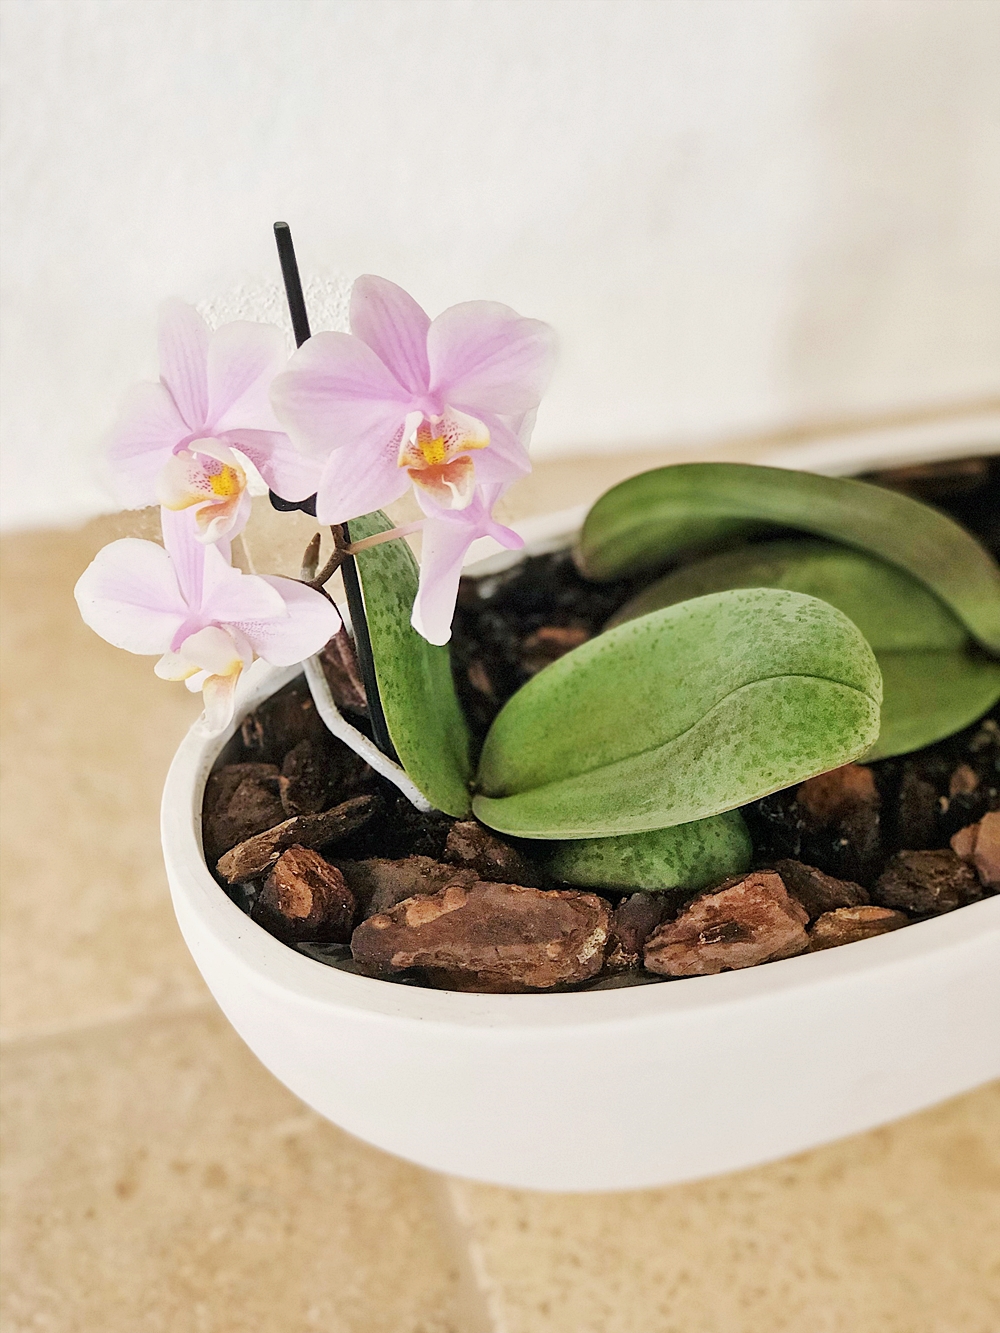 Orchideen richtig umtopfen und Ableger vermehren - so gehts!